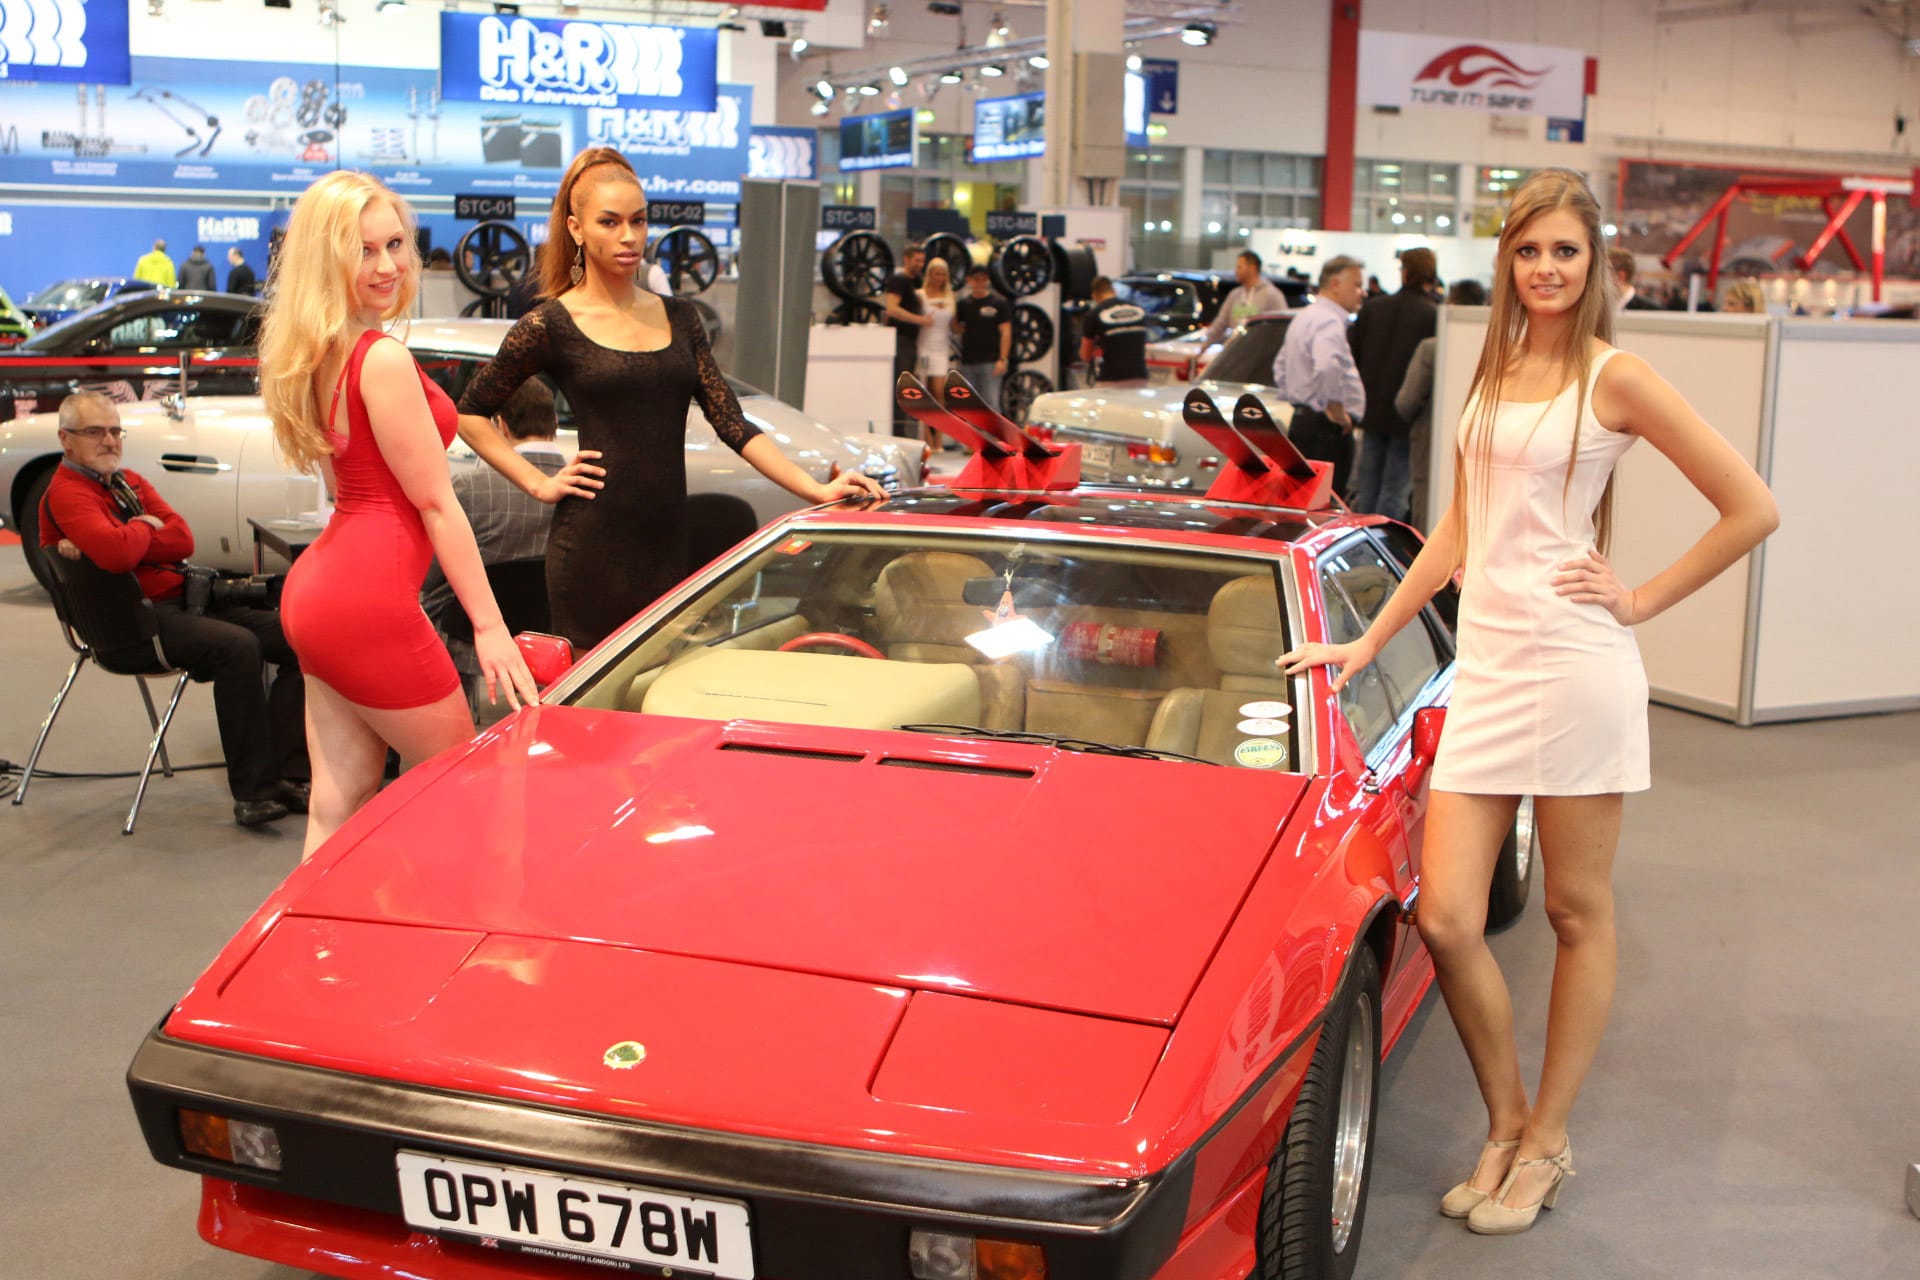 Bond-Autos und Bond-Girls: Auf der Essen Motor Show 2015 traf unser Redakteur auf beides. Unter den Exponaten war auch dieser legendäre Lotus Esprit Turbo aus "In tödlicher Mission" (1981).